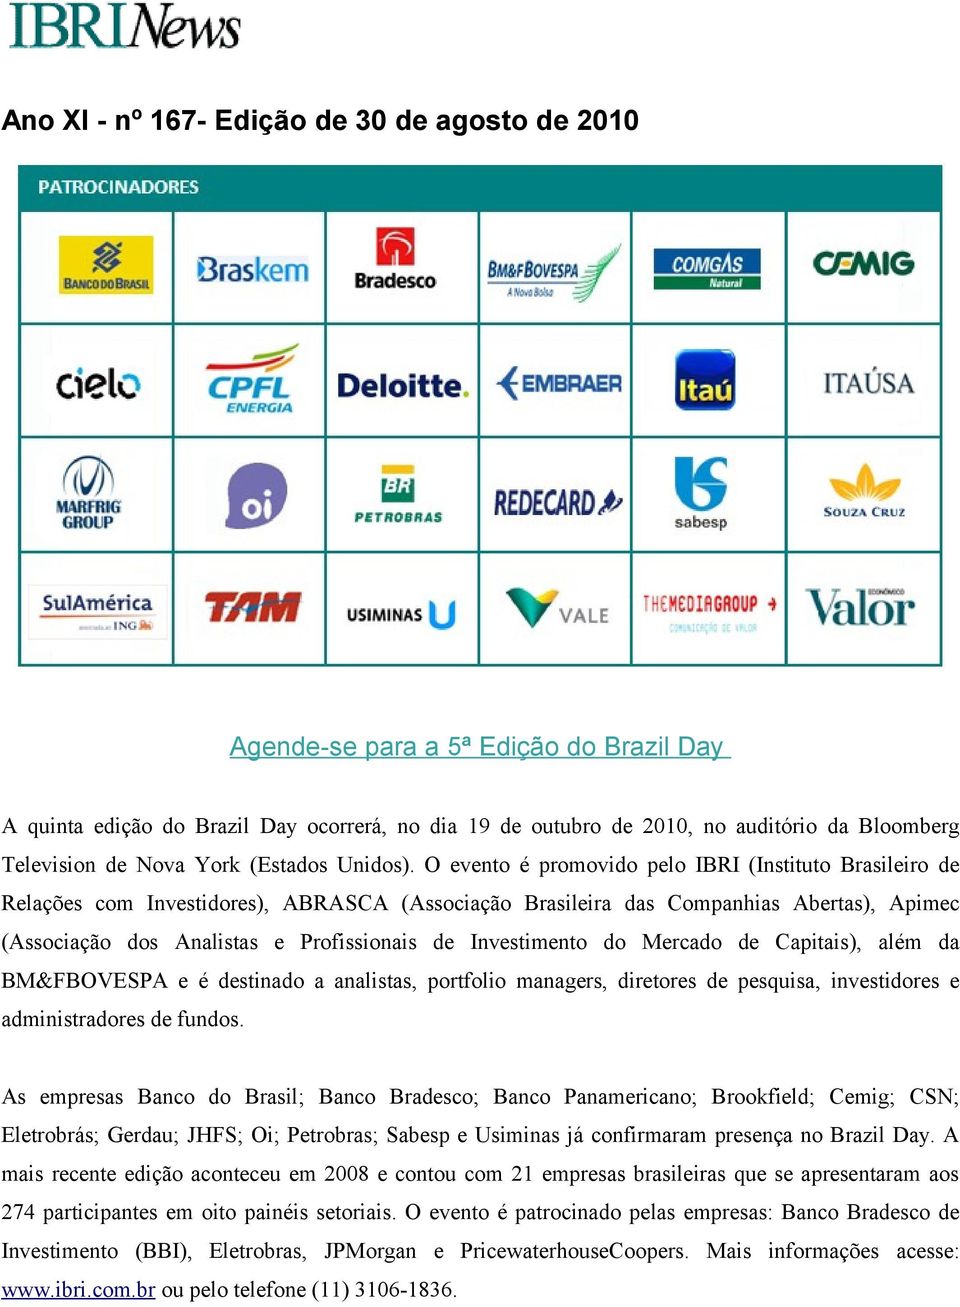 O evento é promovido pelo IBRI (Instituto Brasileiro de Relações com Investidores), ABRASCA (Associação Brasileira das Companhias Abertas), Apimec (Associação dos Analistas e Profissionais de